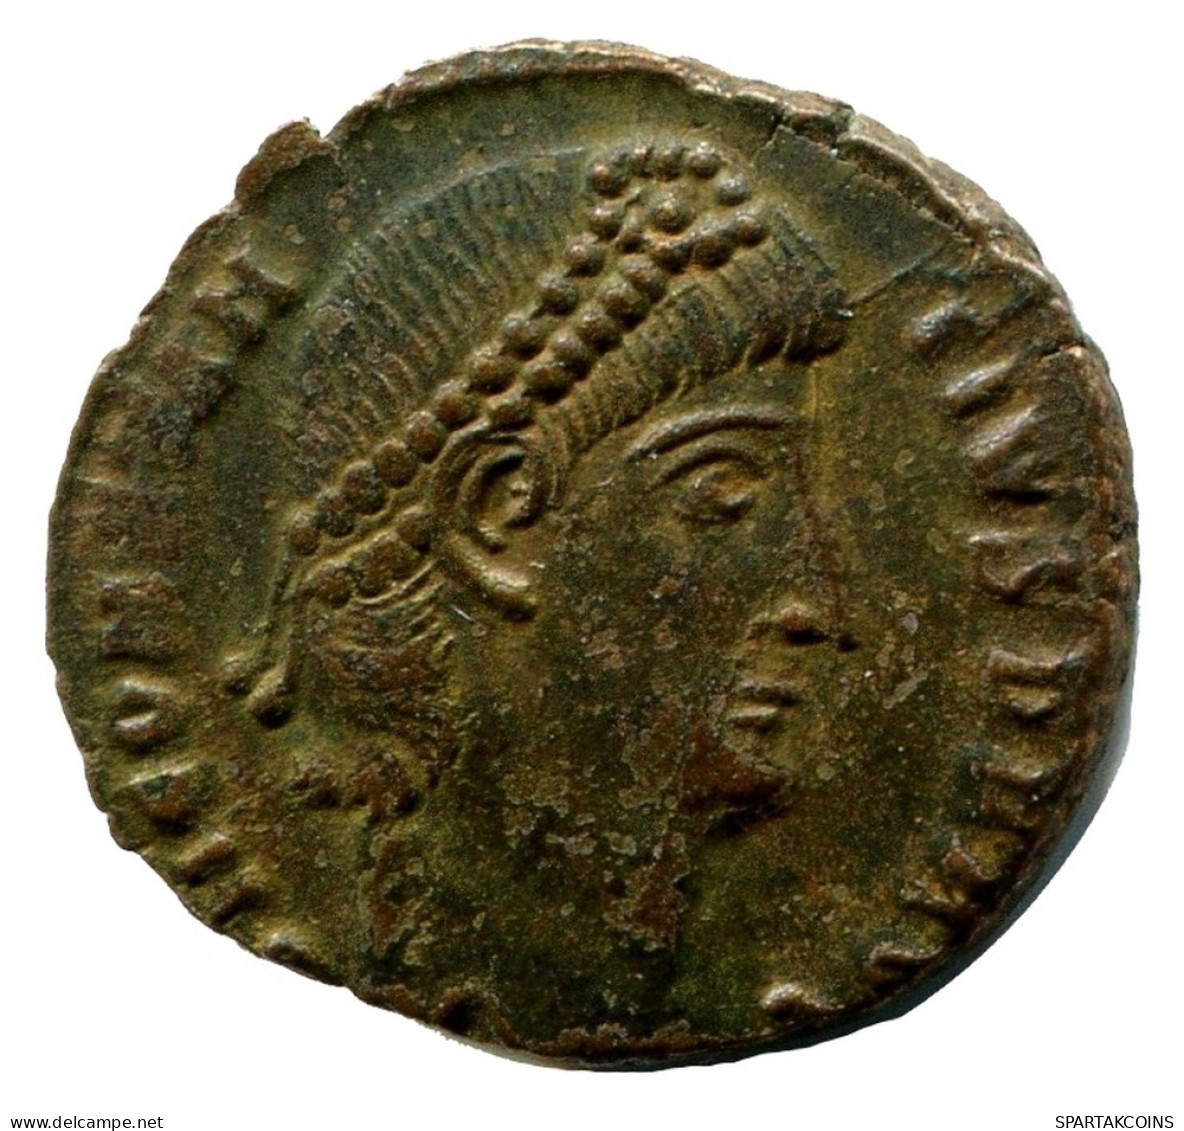 CONSTANTIUS II MINTED IN ANTIOCH FOUND IN IHNASYAH HOARD EGYPT #ANC11228.14.D.A - Der Christlischen Kaiser (307 / 363)